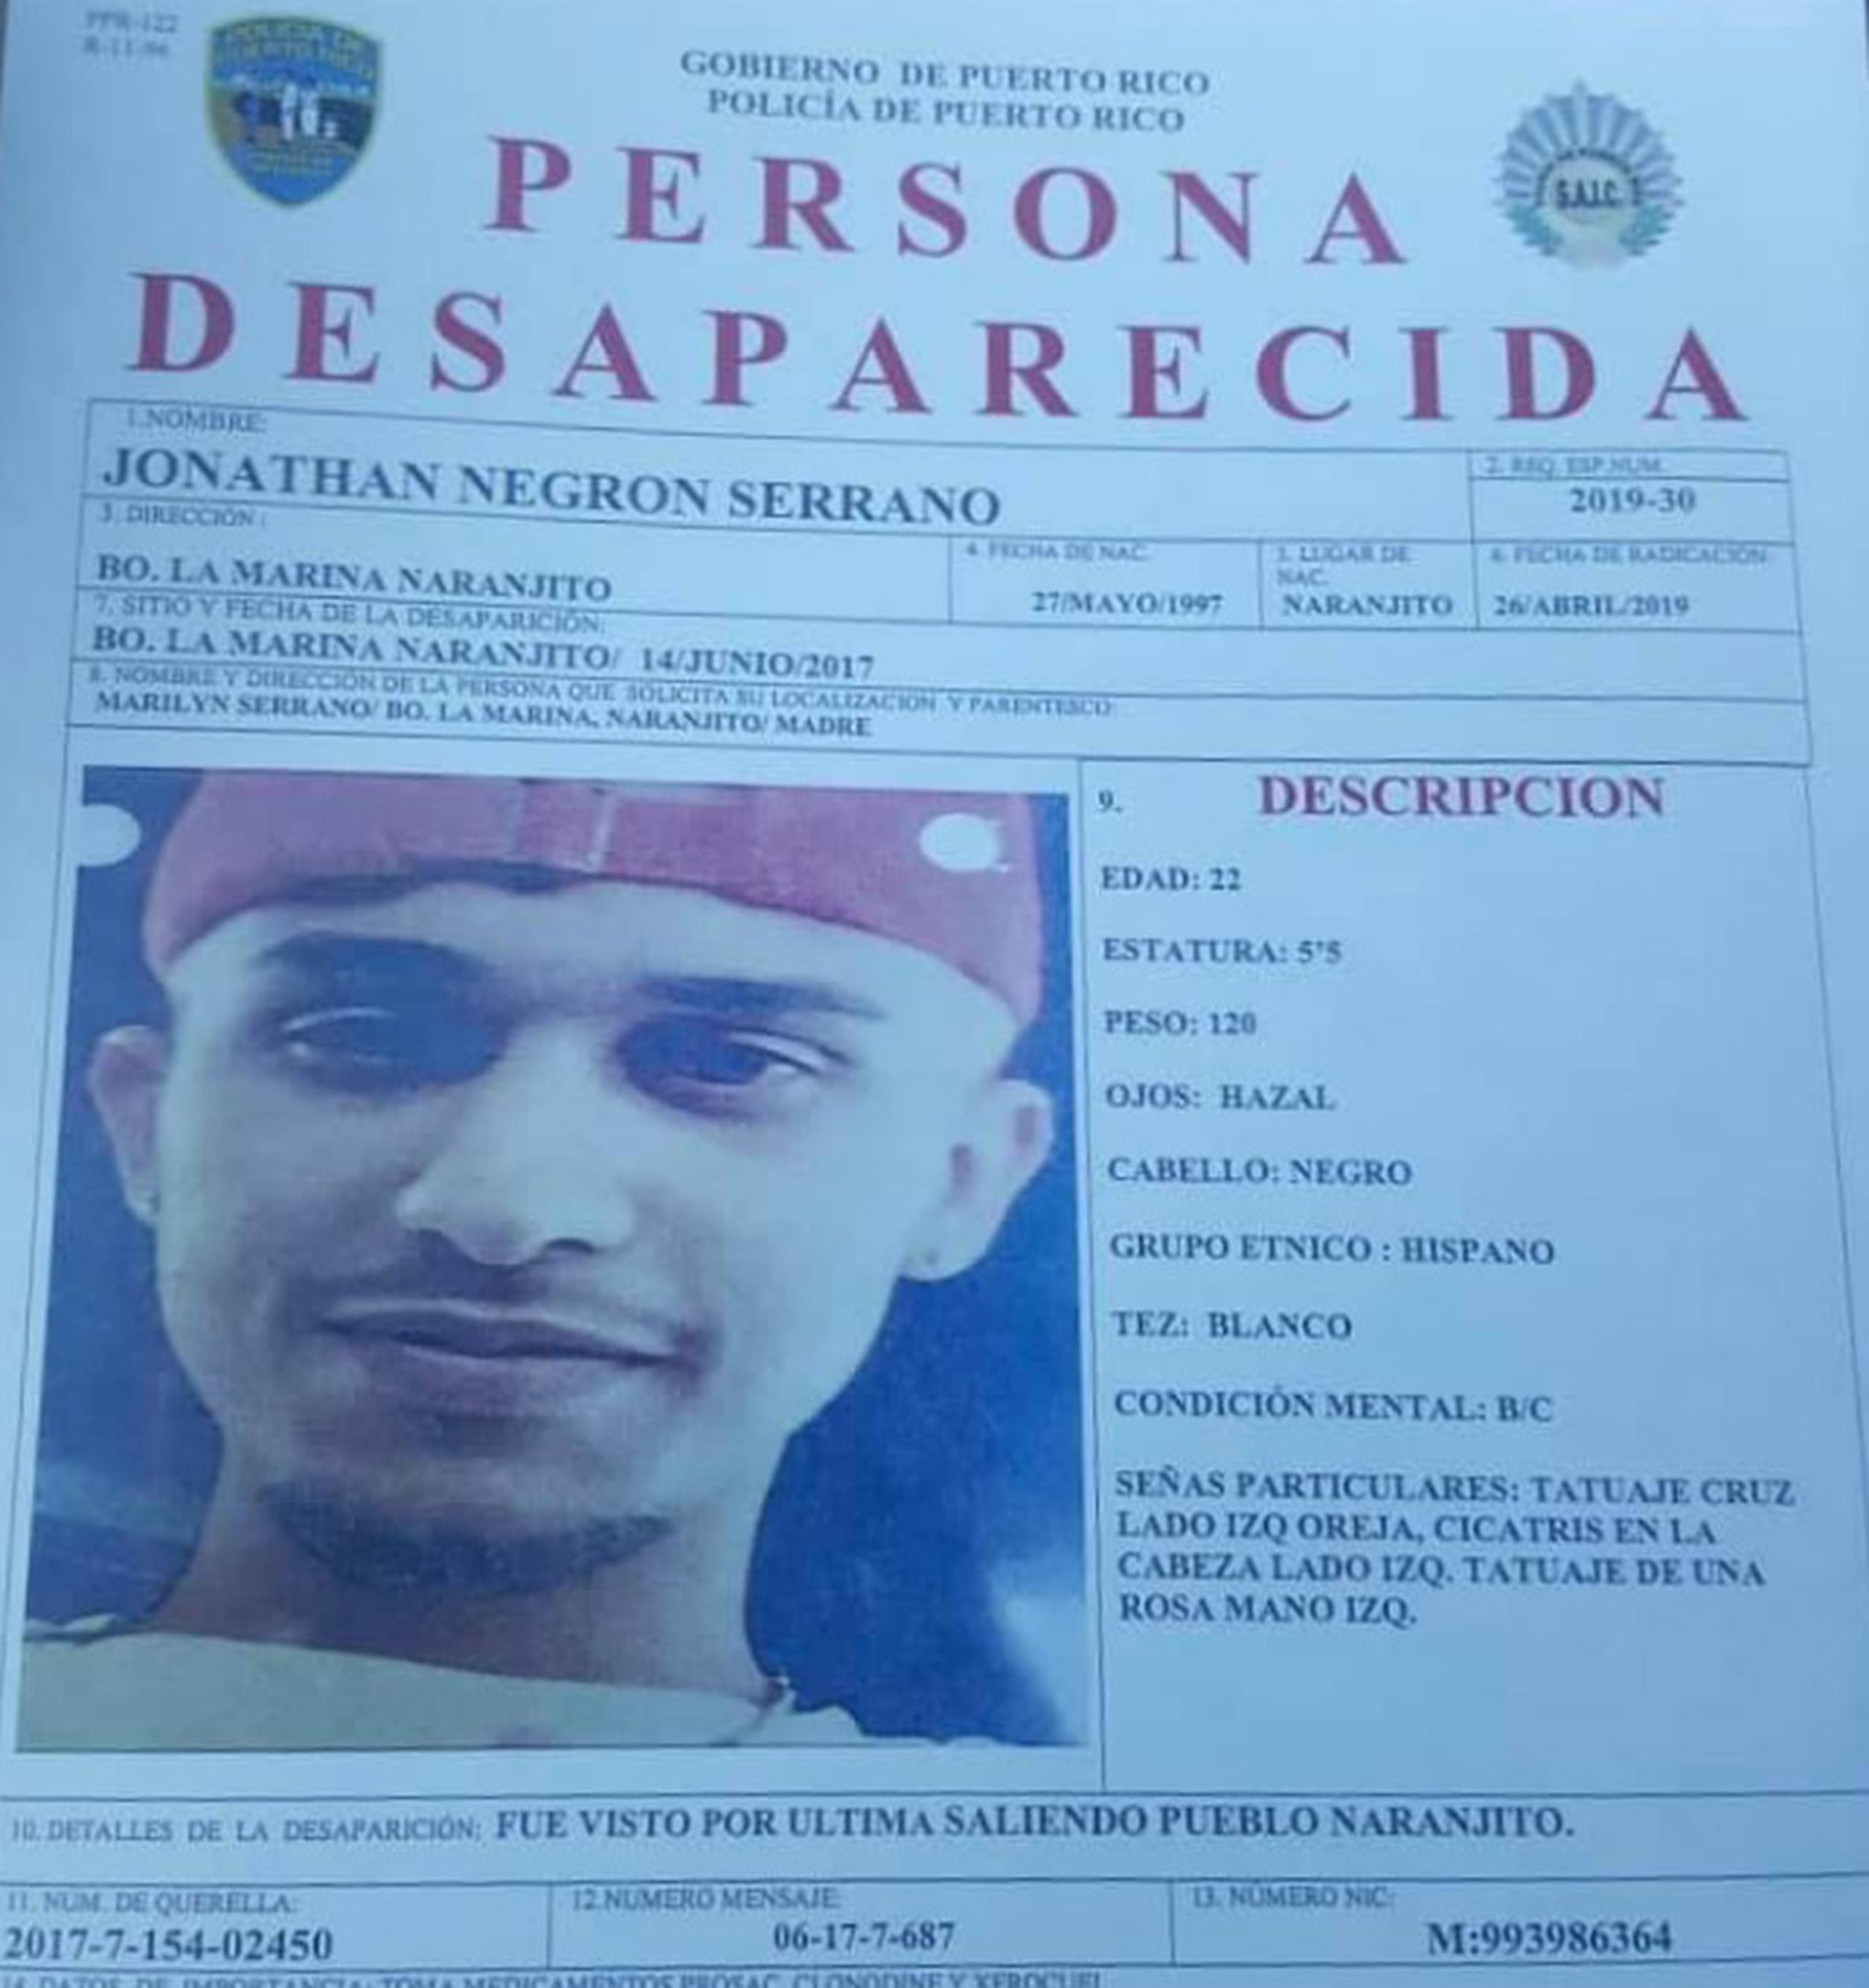 La requisitoria de desaparecido fue publicada el 26 de abril del 2019, ya que para esa fecha fue que su madre autorizó a las autoridades a divulgar su foto.